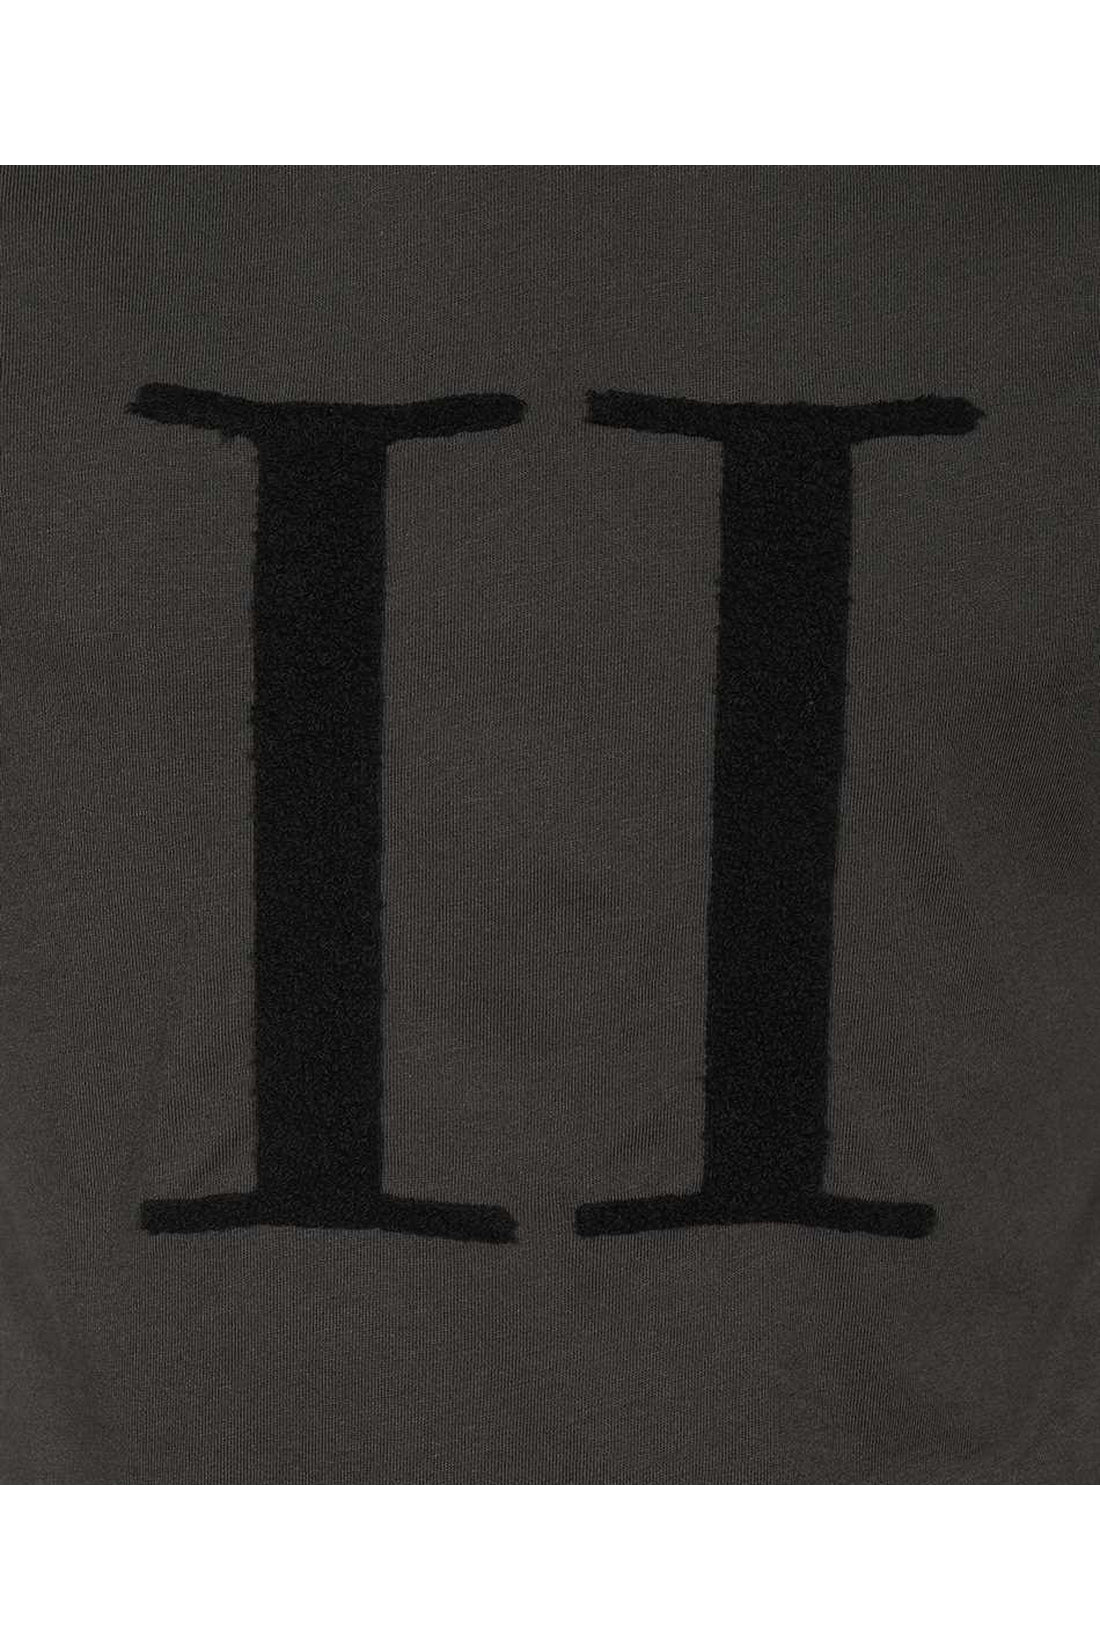 Les Deux-OUTLET-SALE-Logo print t-shirt-ARCHIVIST